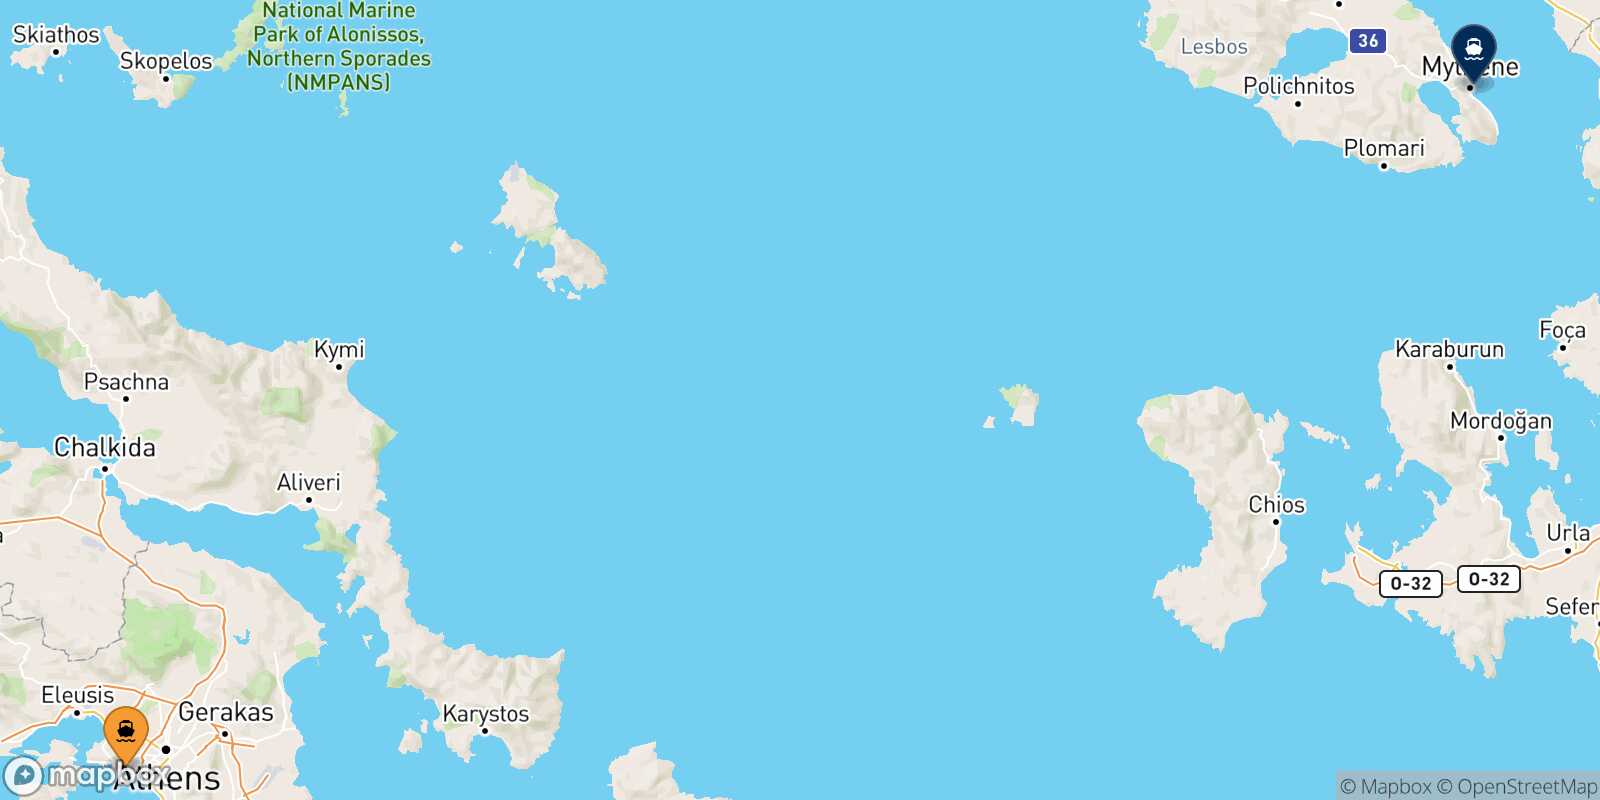 Piraeus Mytilene (Lesvos) route map